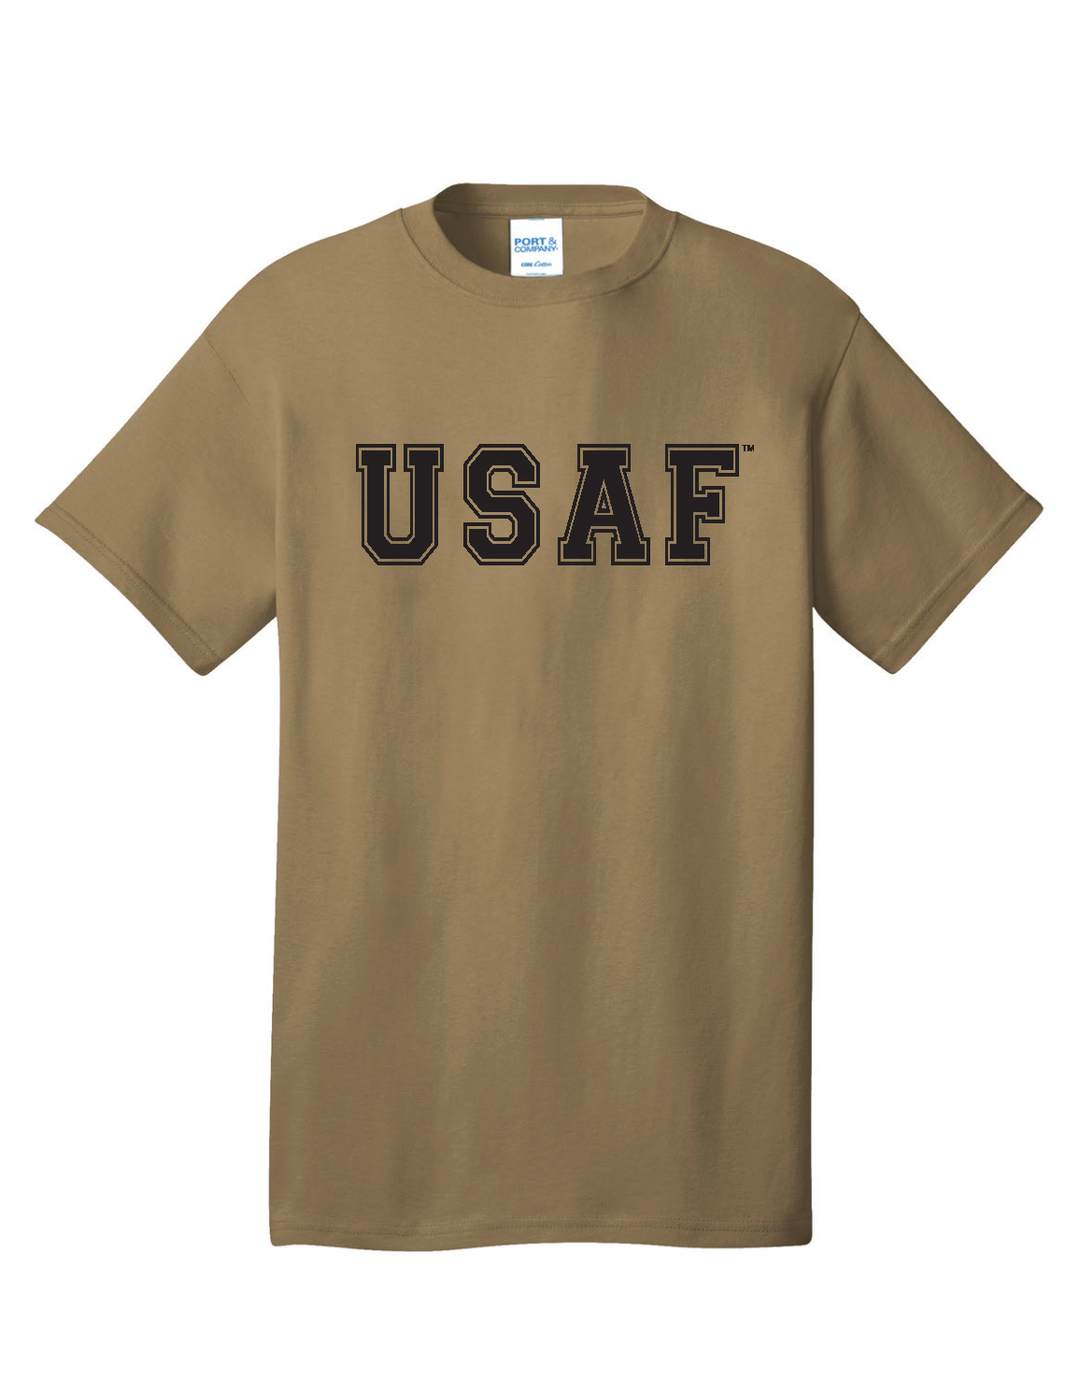 U.S. Air Force T-Shirt (Coyote Brown)